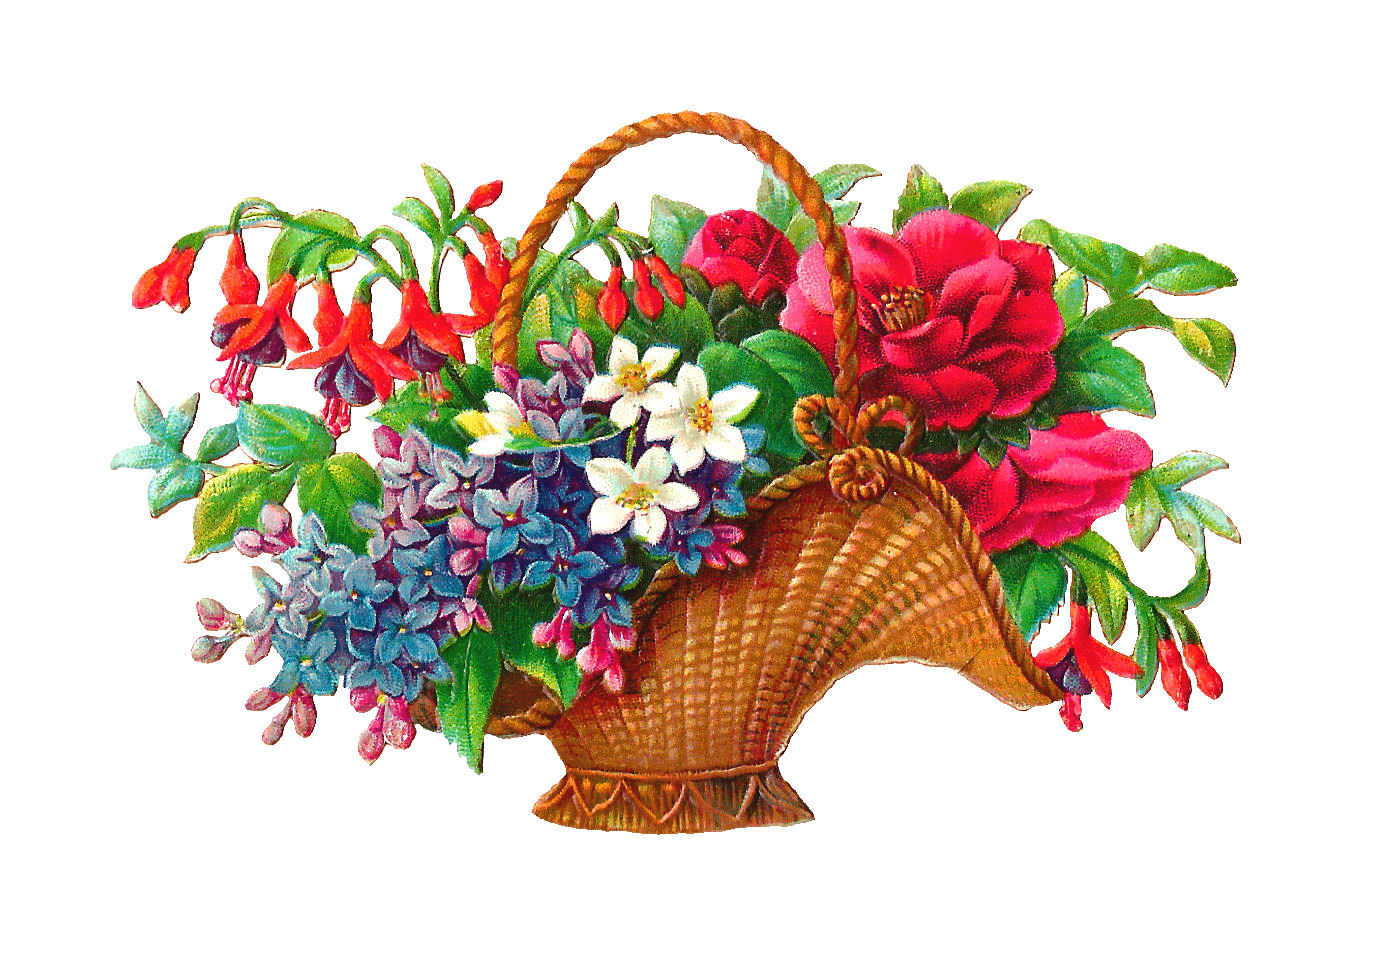 Free Flower Basket Clip Art  2 Wicket Baskets Full Of Wild Flowers